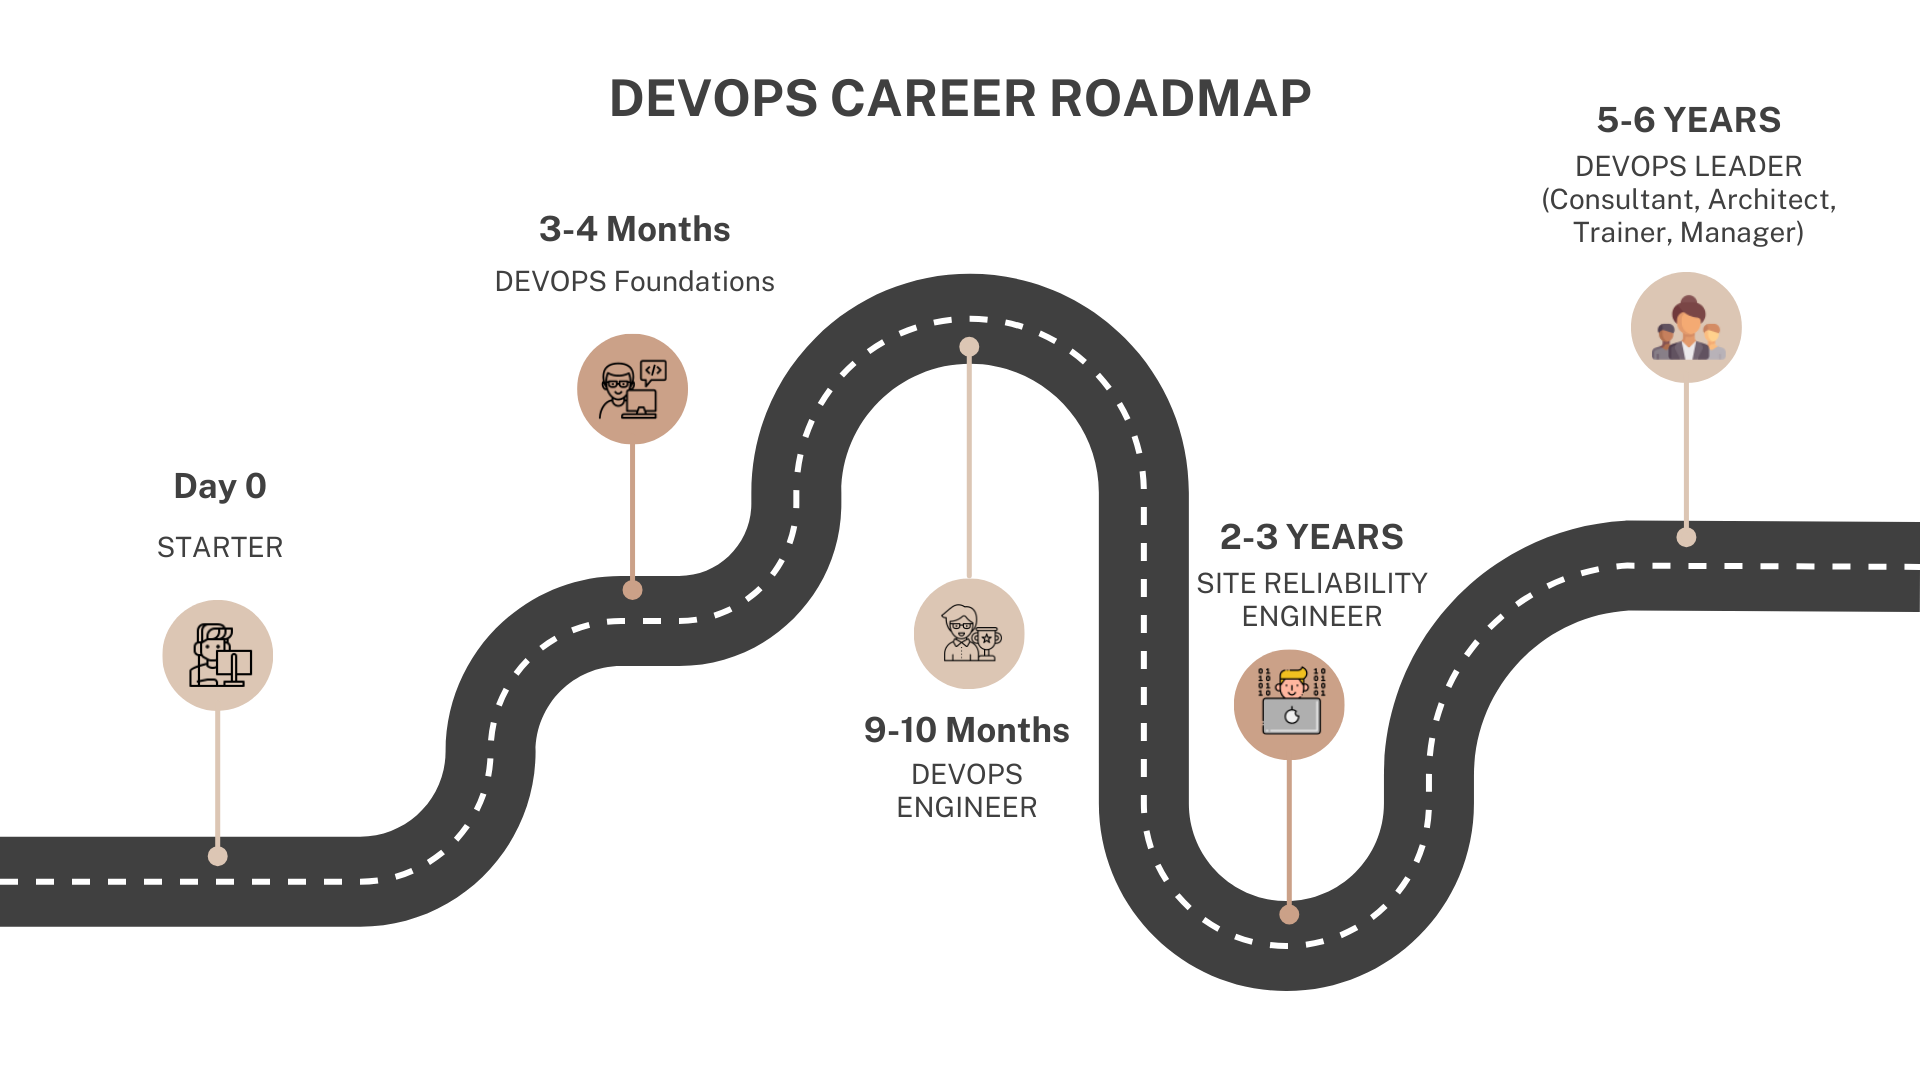 Devops Career Roadmap by School of Devops